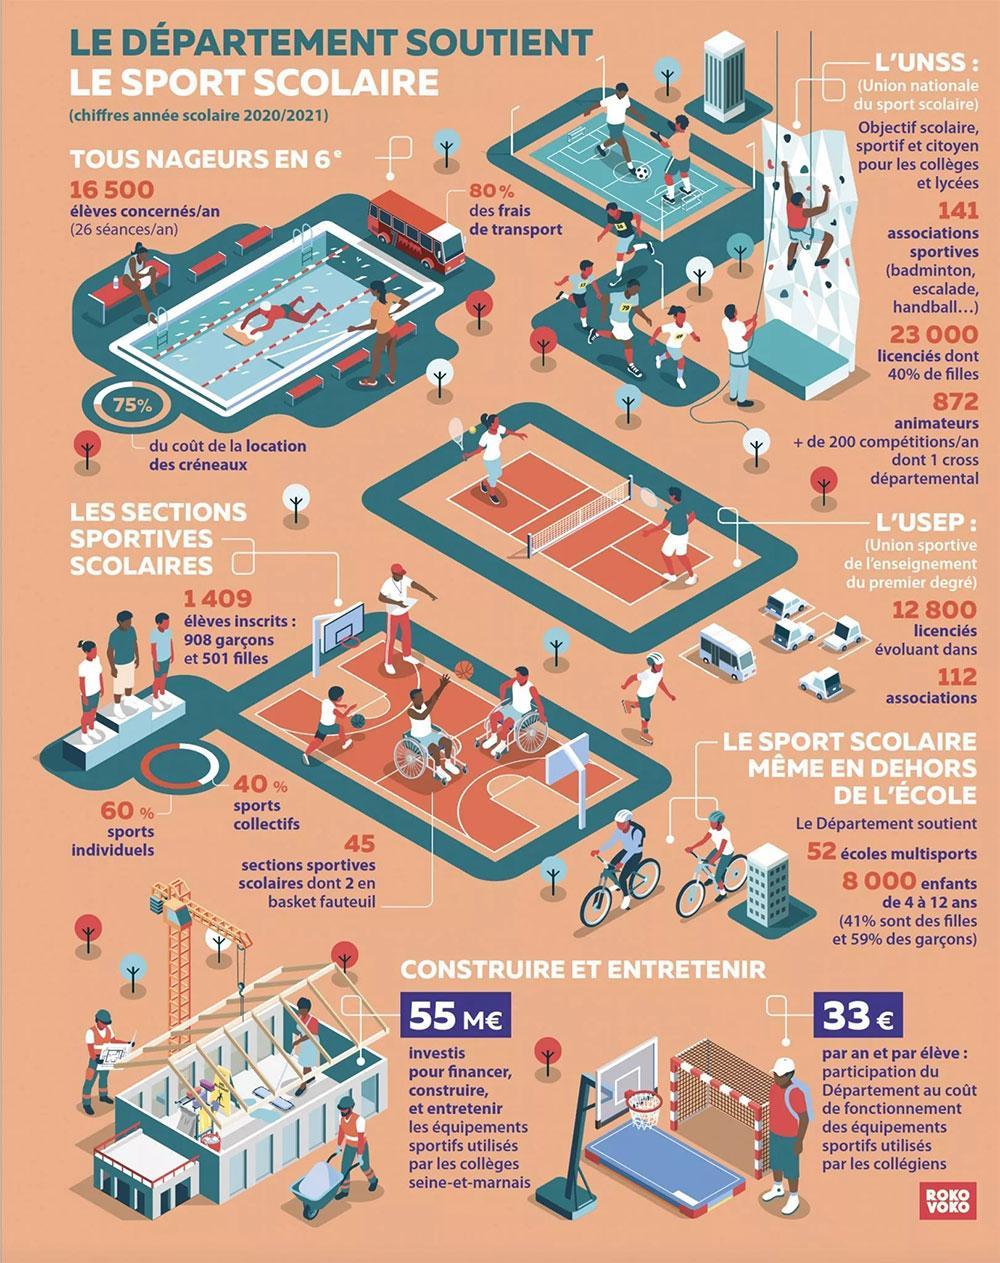 Infographie sur le soutien du Département de Seine-et-Marne pour le sport scolaire. Avec 55 M€, le Département investit pour financer, construire et entretenir les équipements sportifs utilisés par le collèges seine-et-marnais.